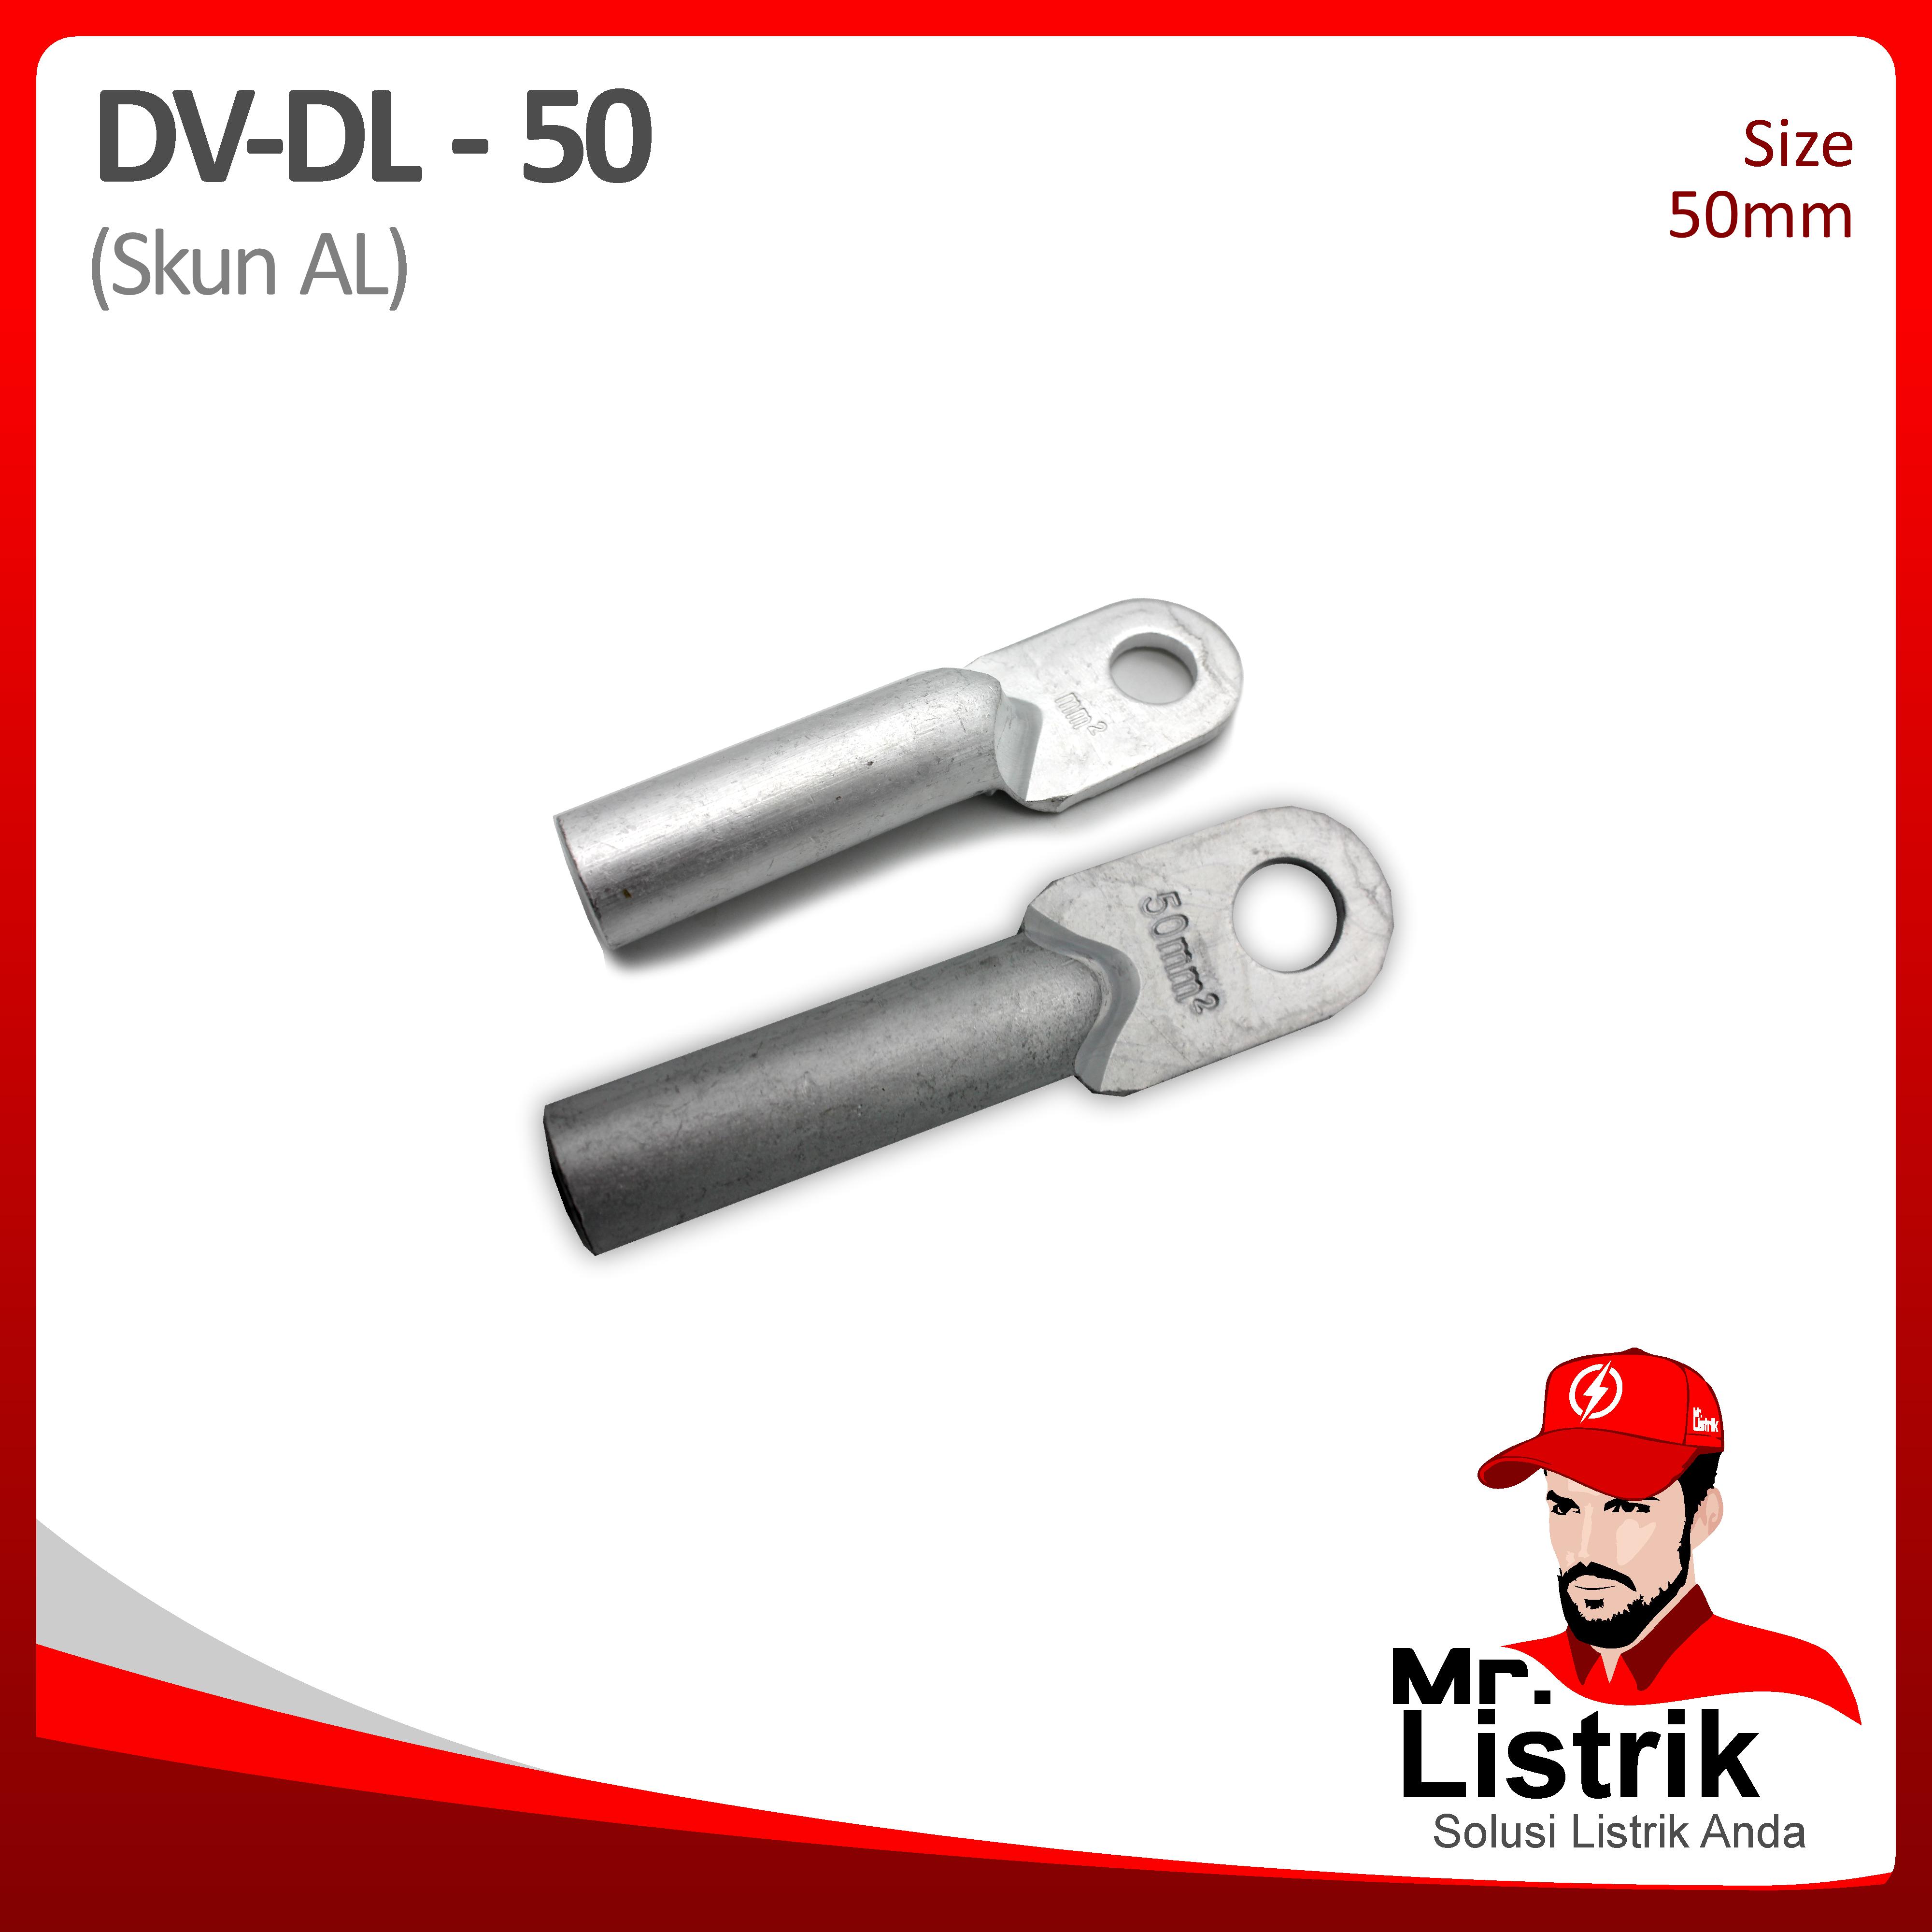 Skun AL 50mm DV DL-50